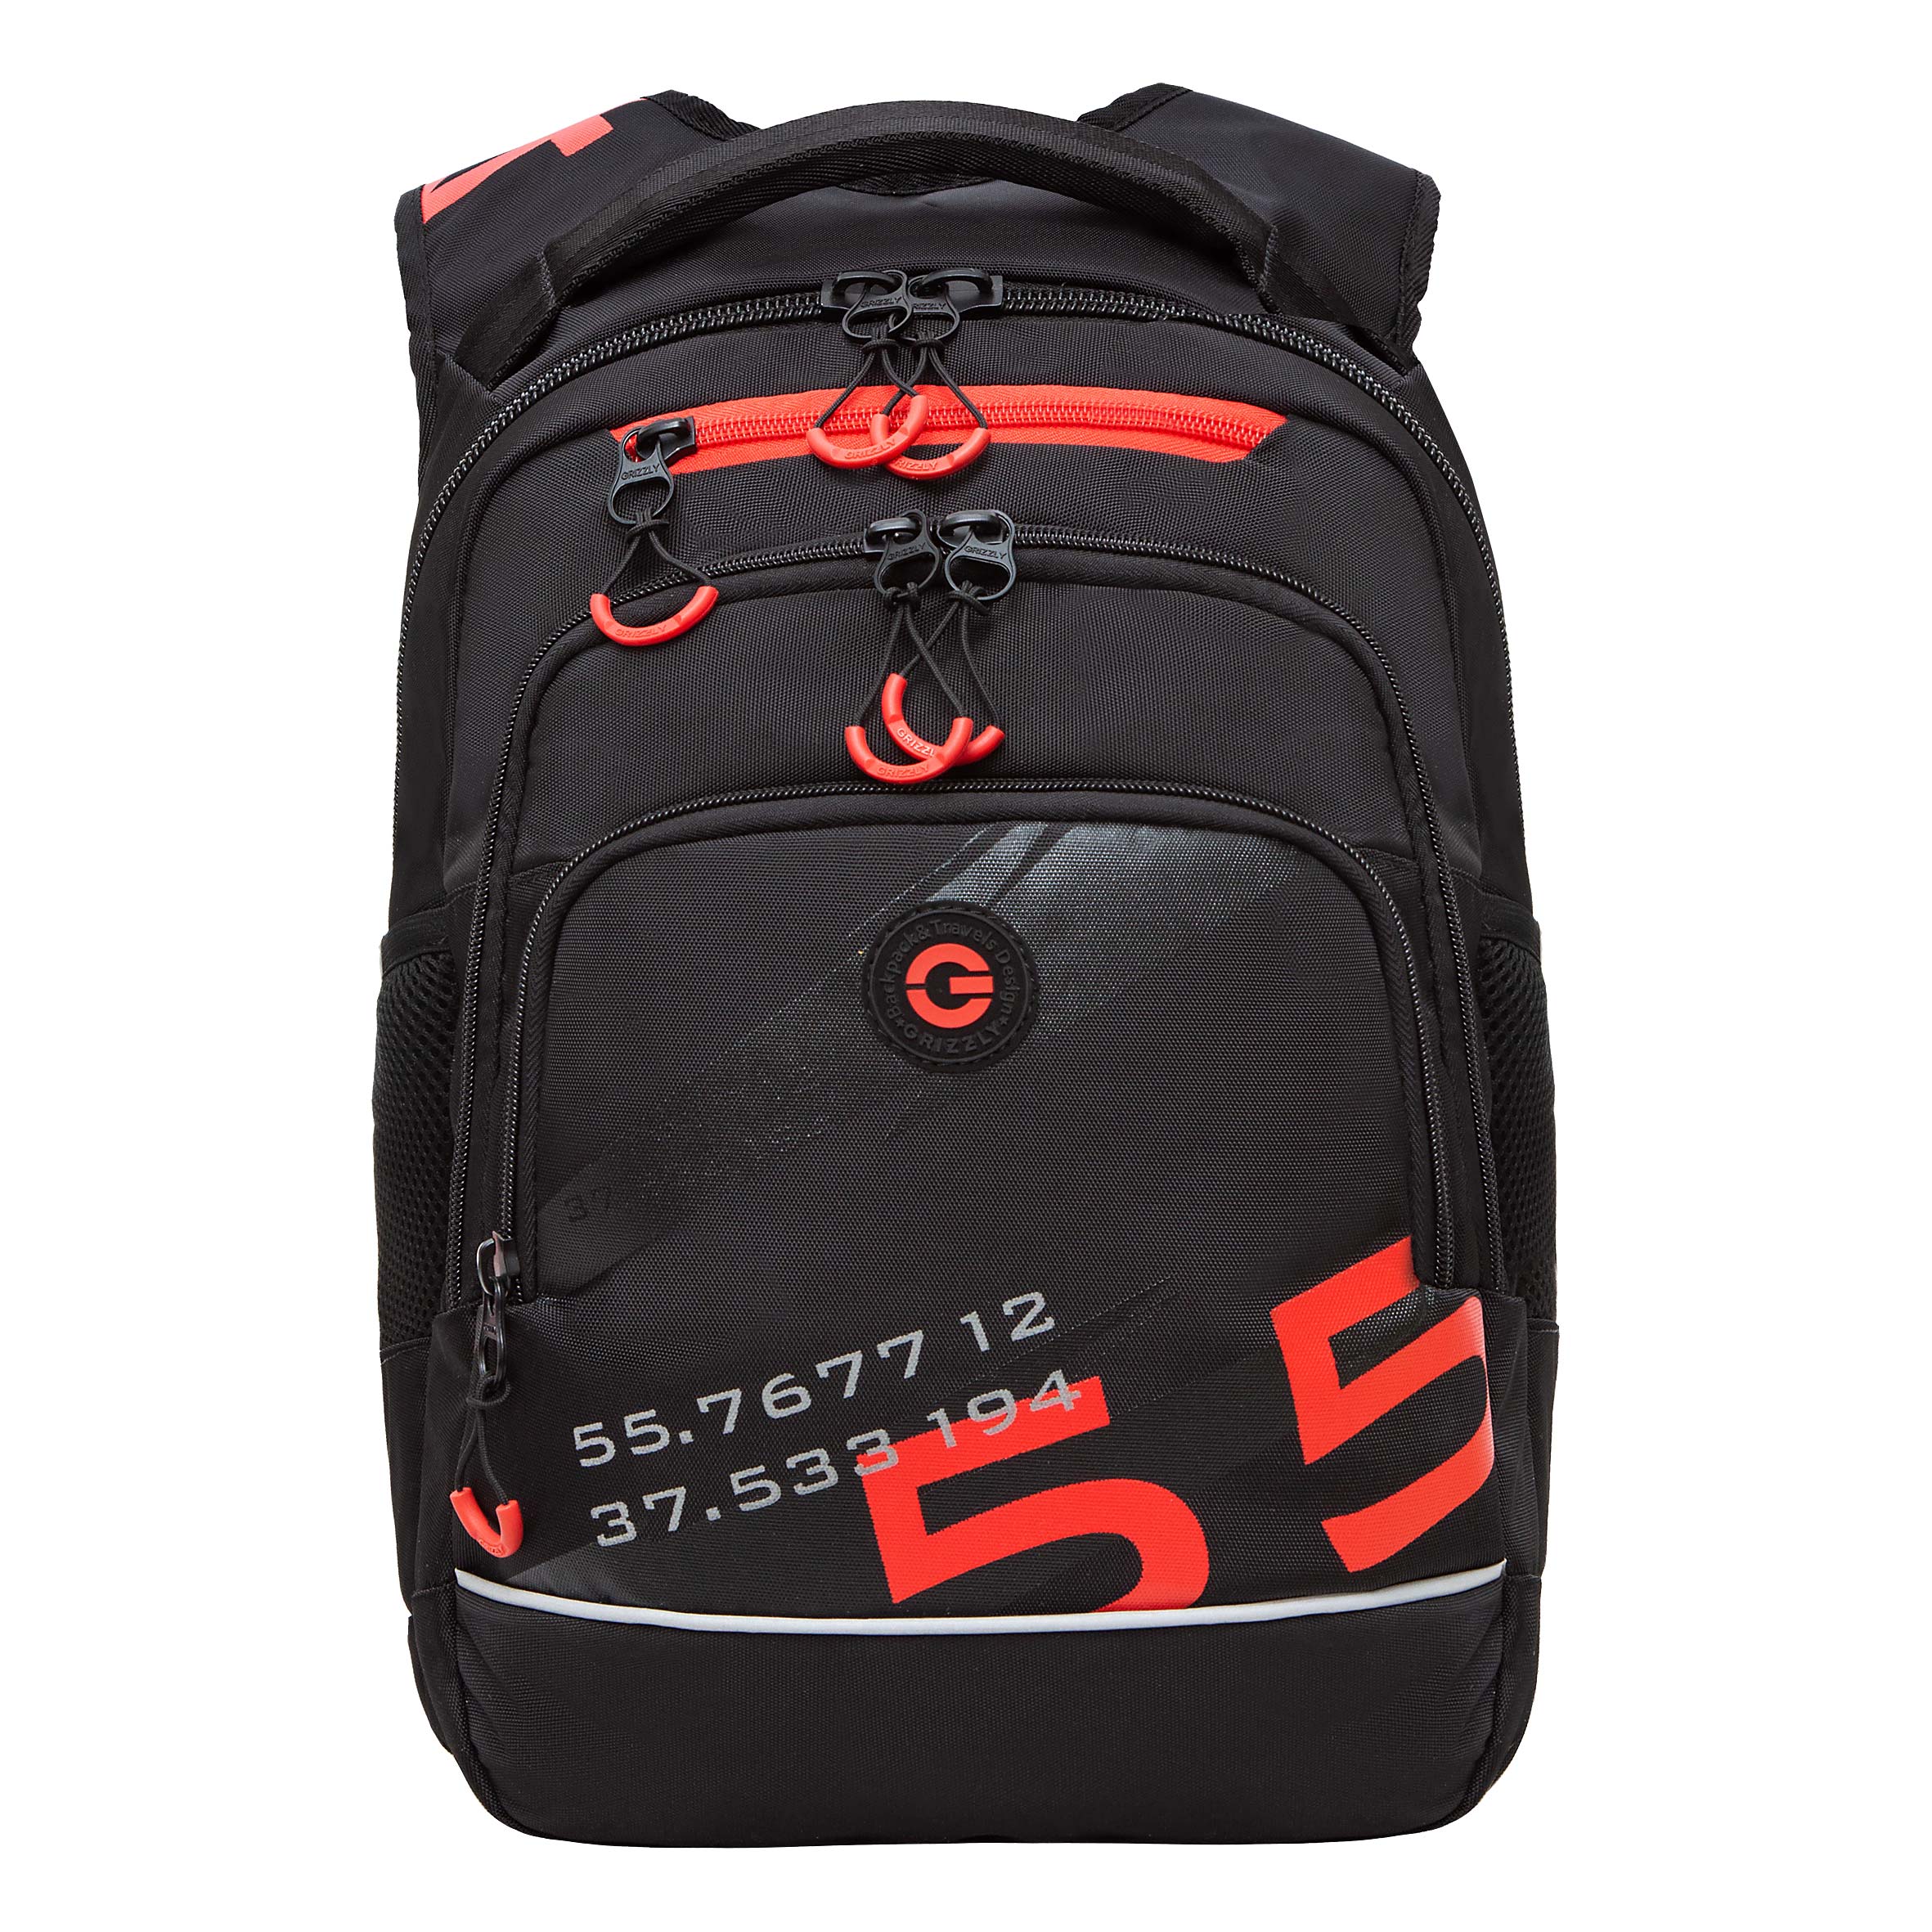 Рюкзак школьный GRIZZLY с карманом для ноутбука, анатомический, для мальчика RB-450-21